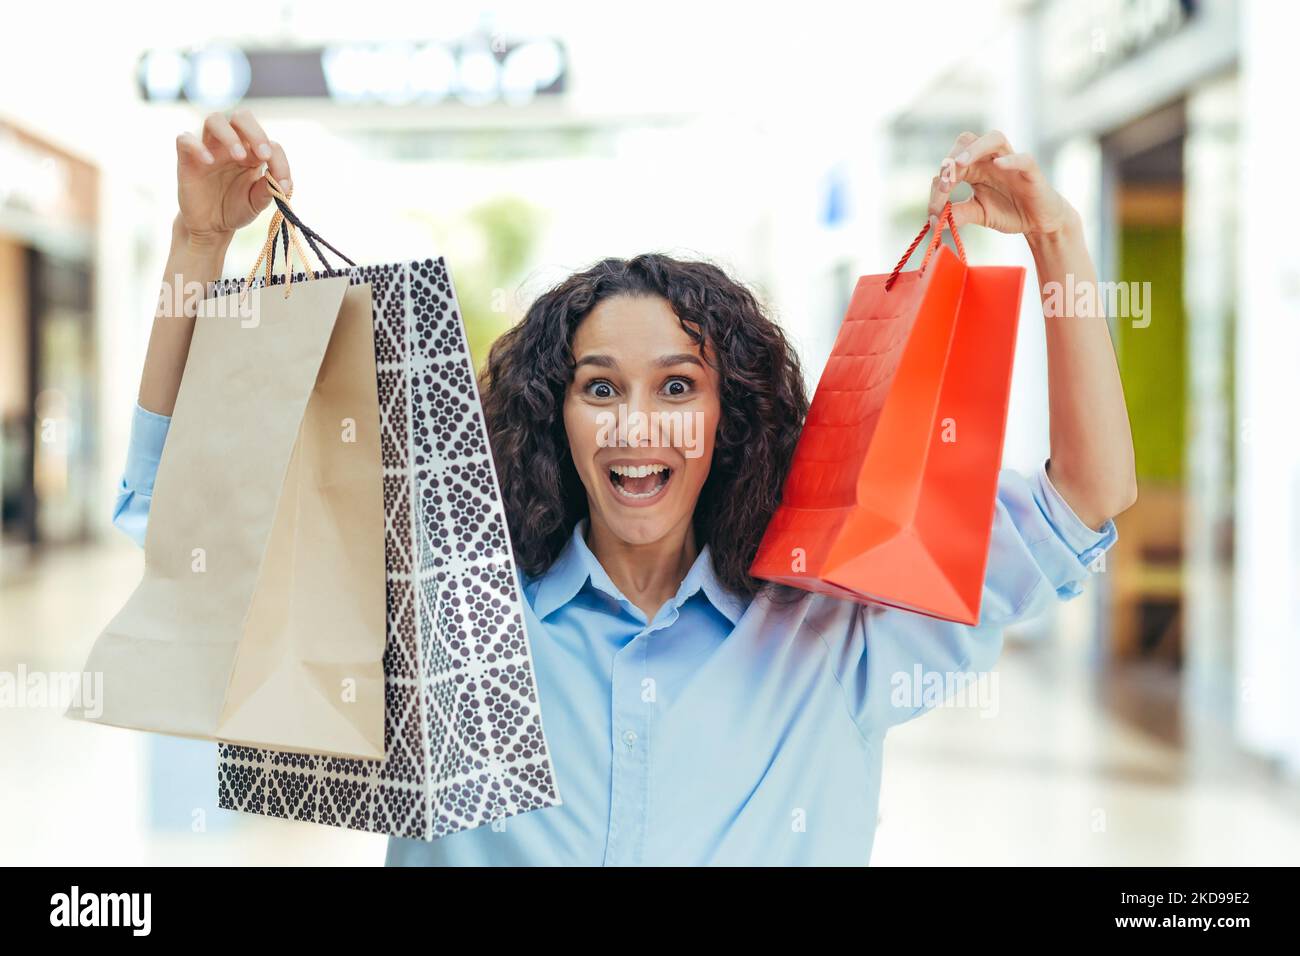 Portrait d'une femme heureuse shopper, femme hispanique dans un supermarché avec des sacs colorés est heureux et regardant l'appareil photo, à l'intérieur d'un grand magasin de vêtements Banque D'Images